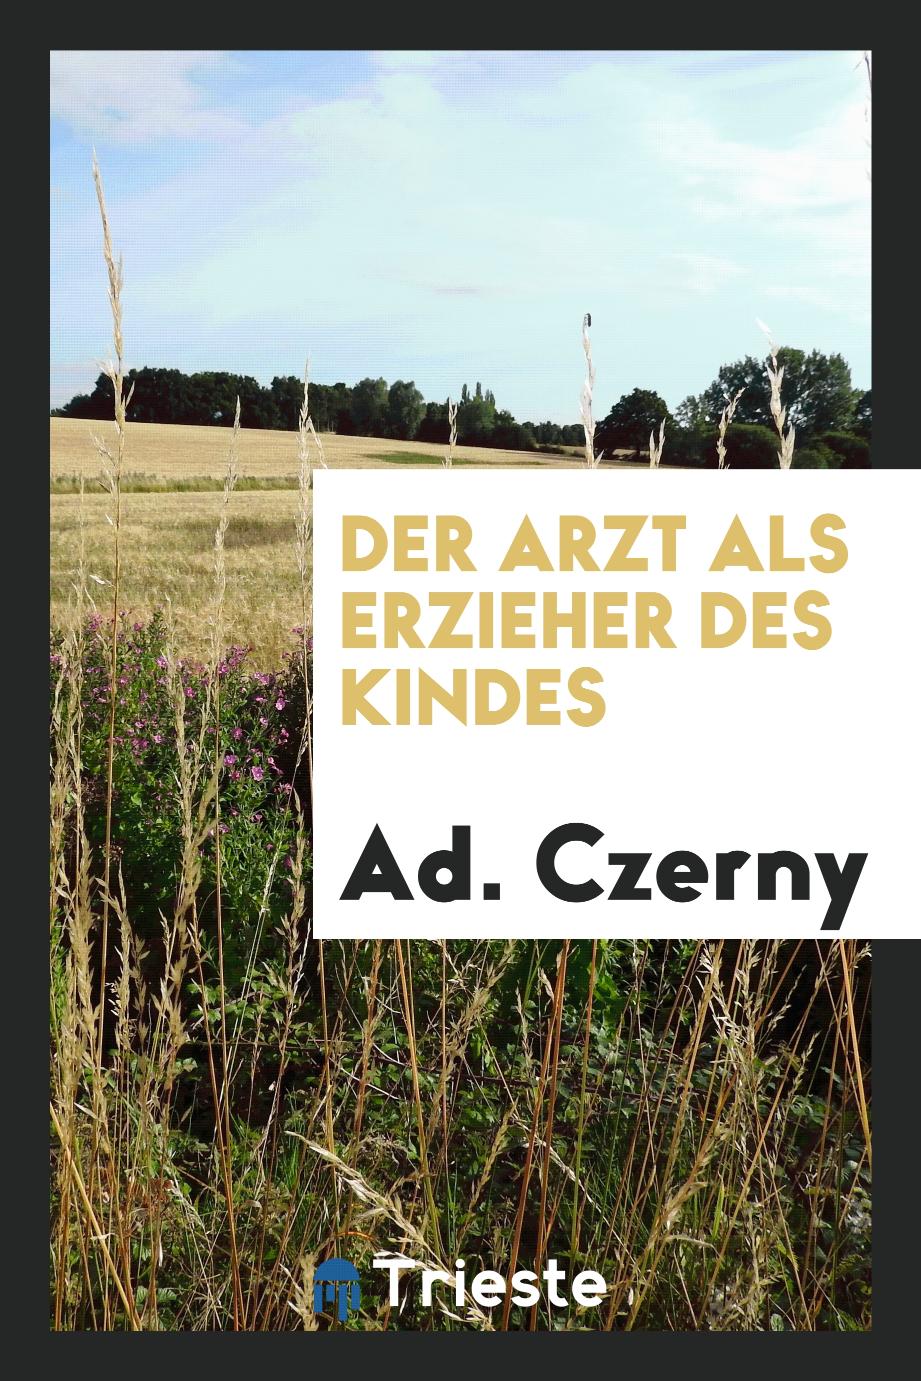 Ad. Czerny - Der Arzt als Erzieher des Kindes